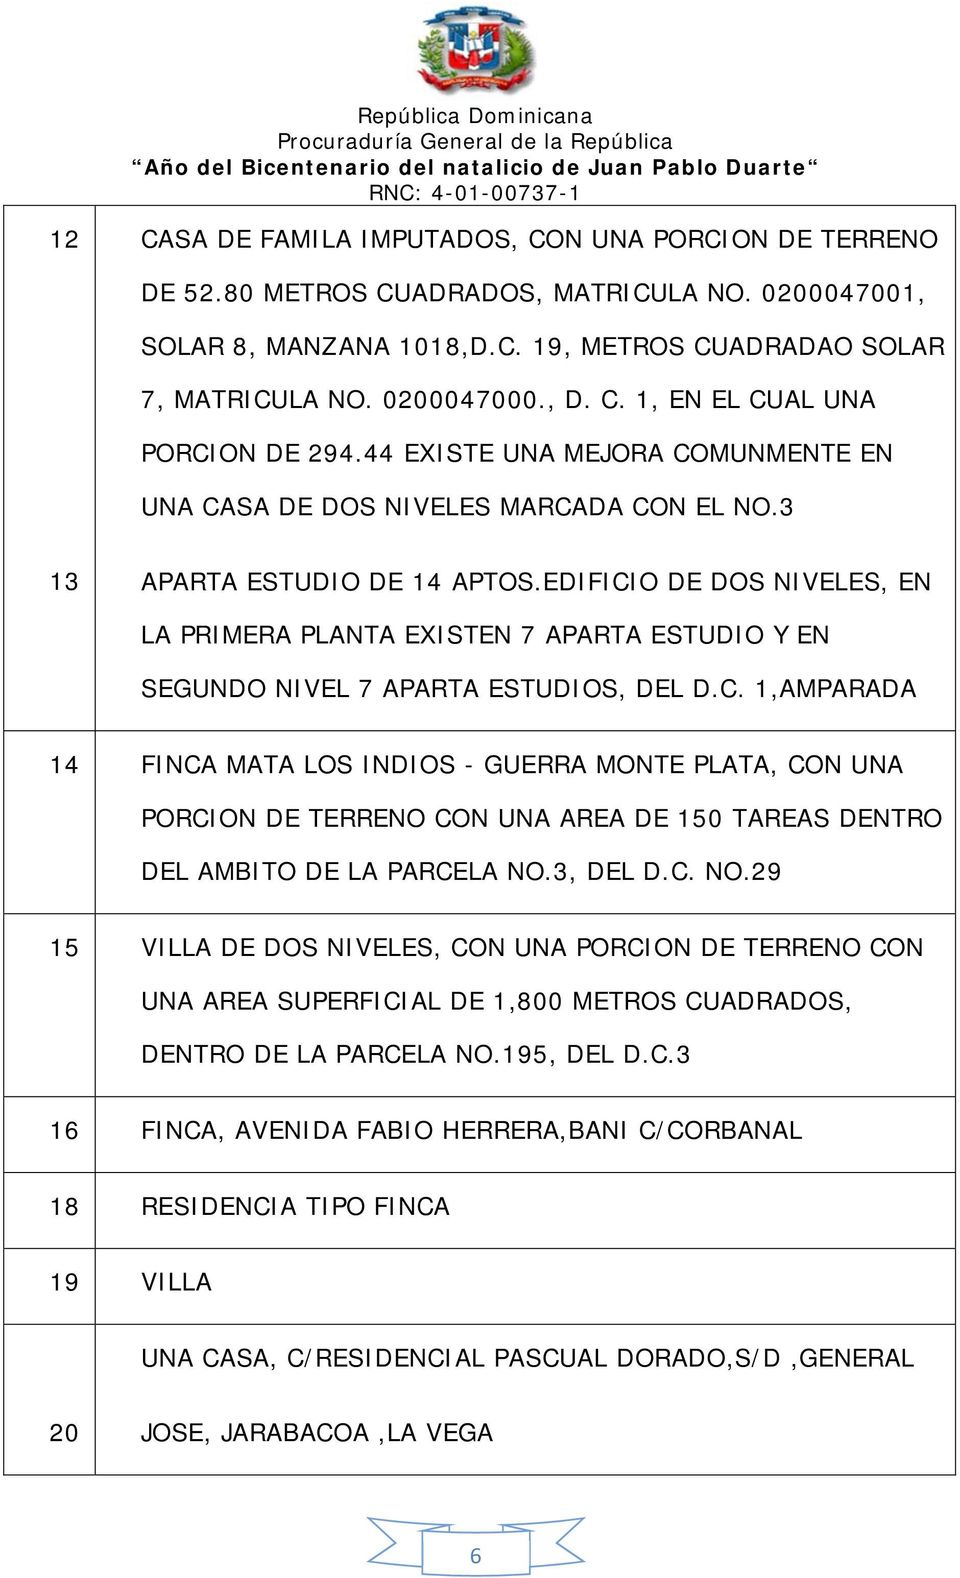 EDIFICIO DE DOS NIVELES, EN LA PRIMERA PLANTA EXISTEN 7 APARTA ESTUDIO Y EN SEGUNDO NIVEL 7 APARTA ESTUDIOS, DEL D.C. 1,AMPARADA 14 FINCA MATA LOS INDIOS - GUERRA MONTE PLATA, CON UNA PORCION DE TERRENO CON UNA AREA DE 150 TAREAS DENTRO DEL AMBITO DE LA PARCELA NO.